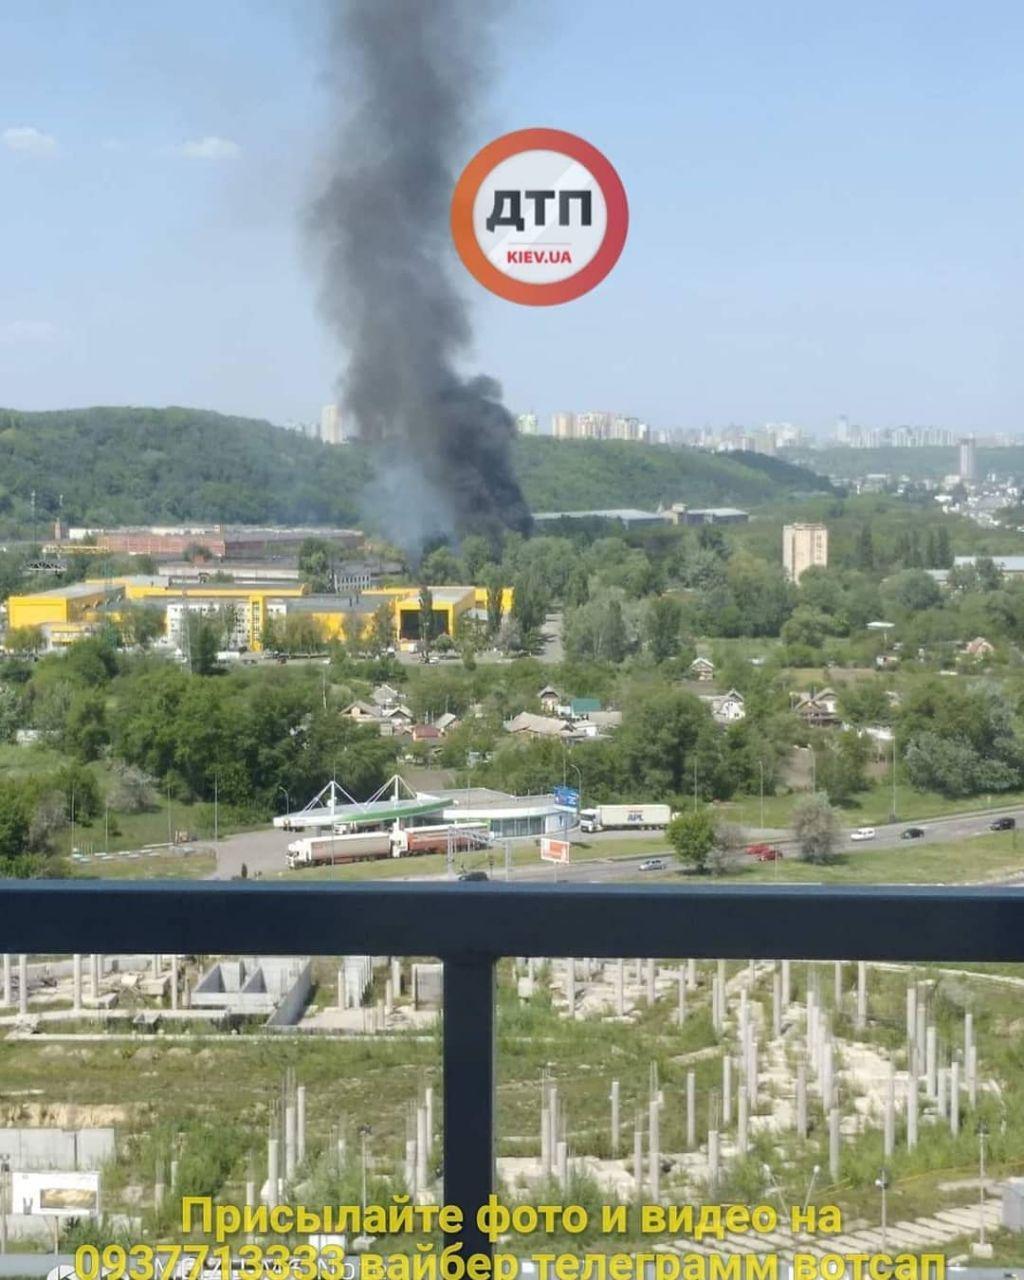 Сгорели более 50 авто: фото и видео масштабного пожара в Киеве